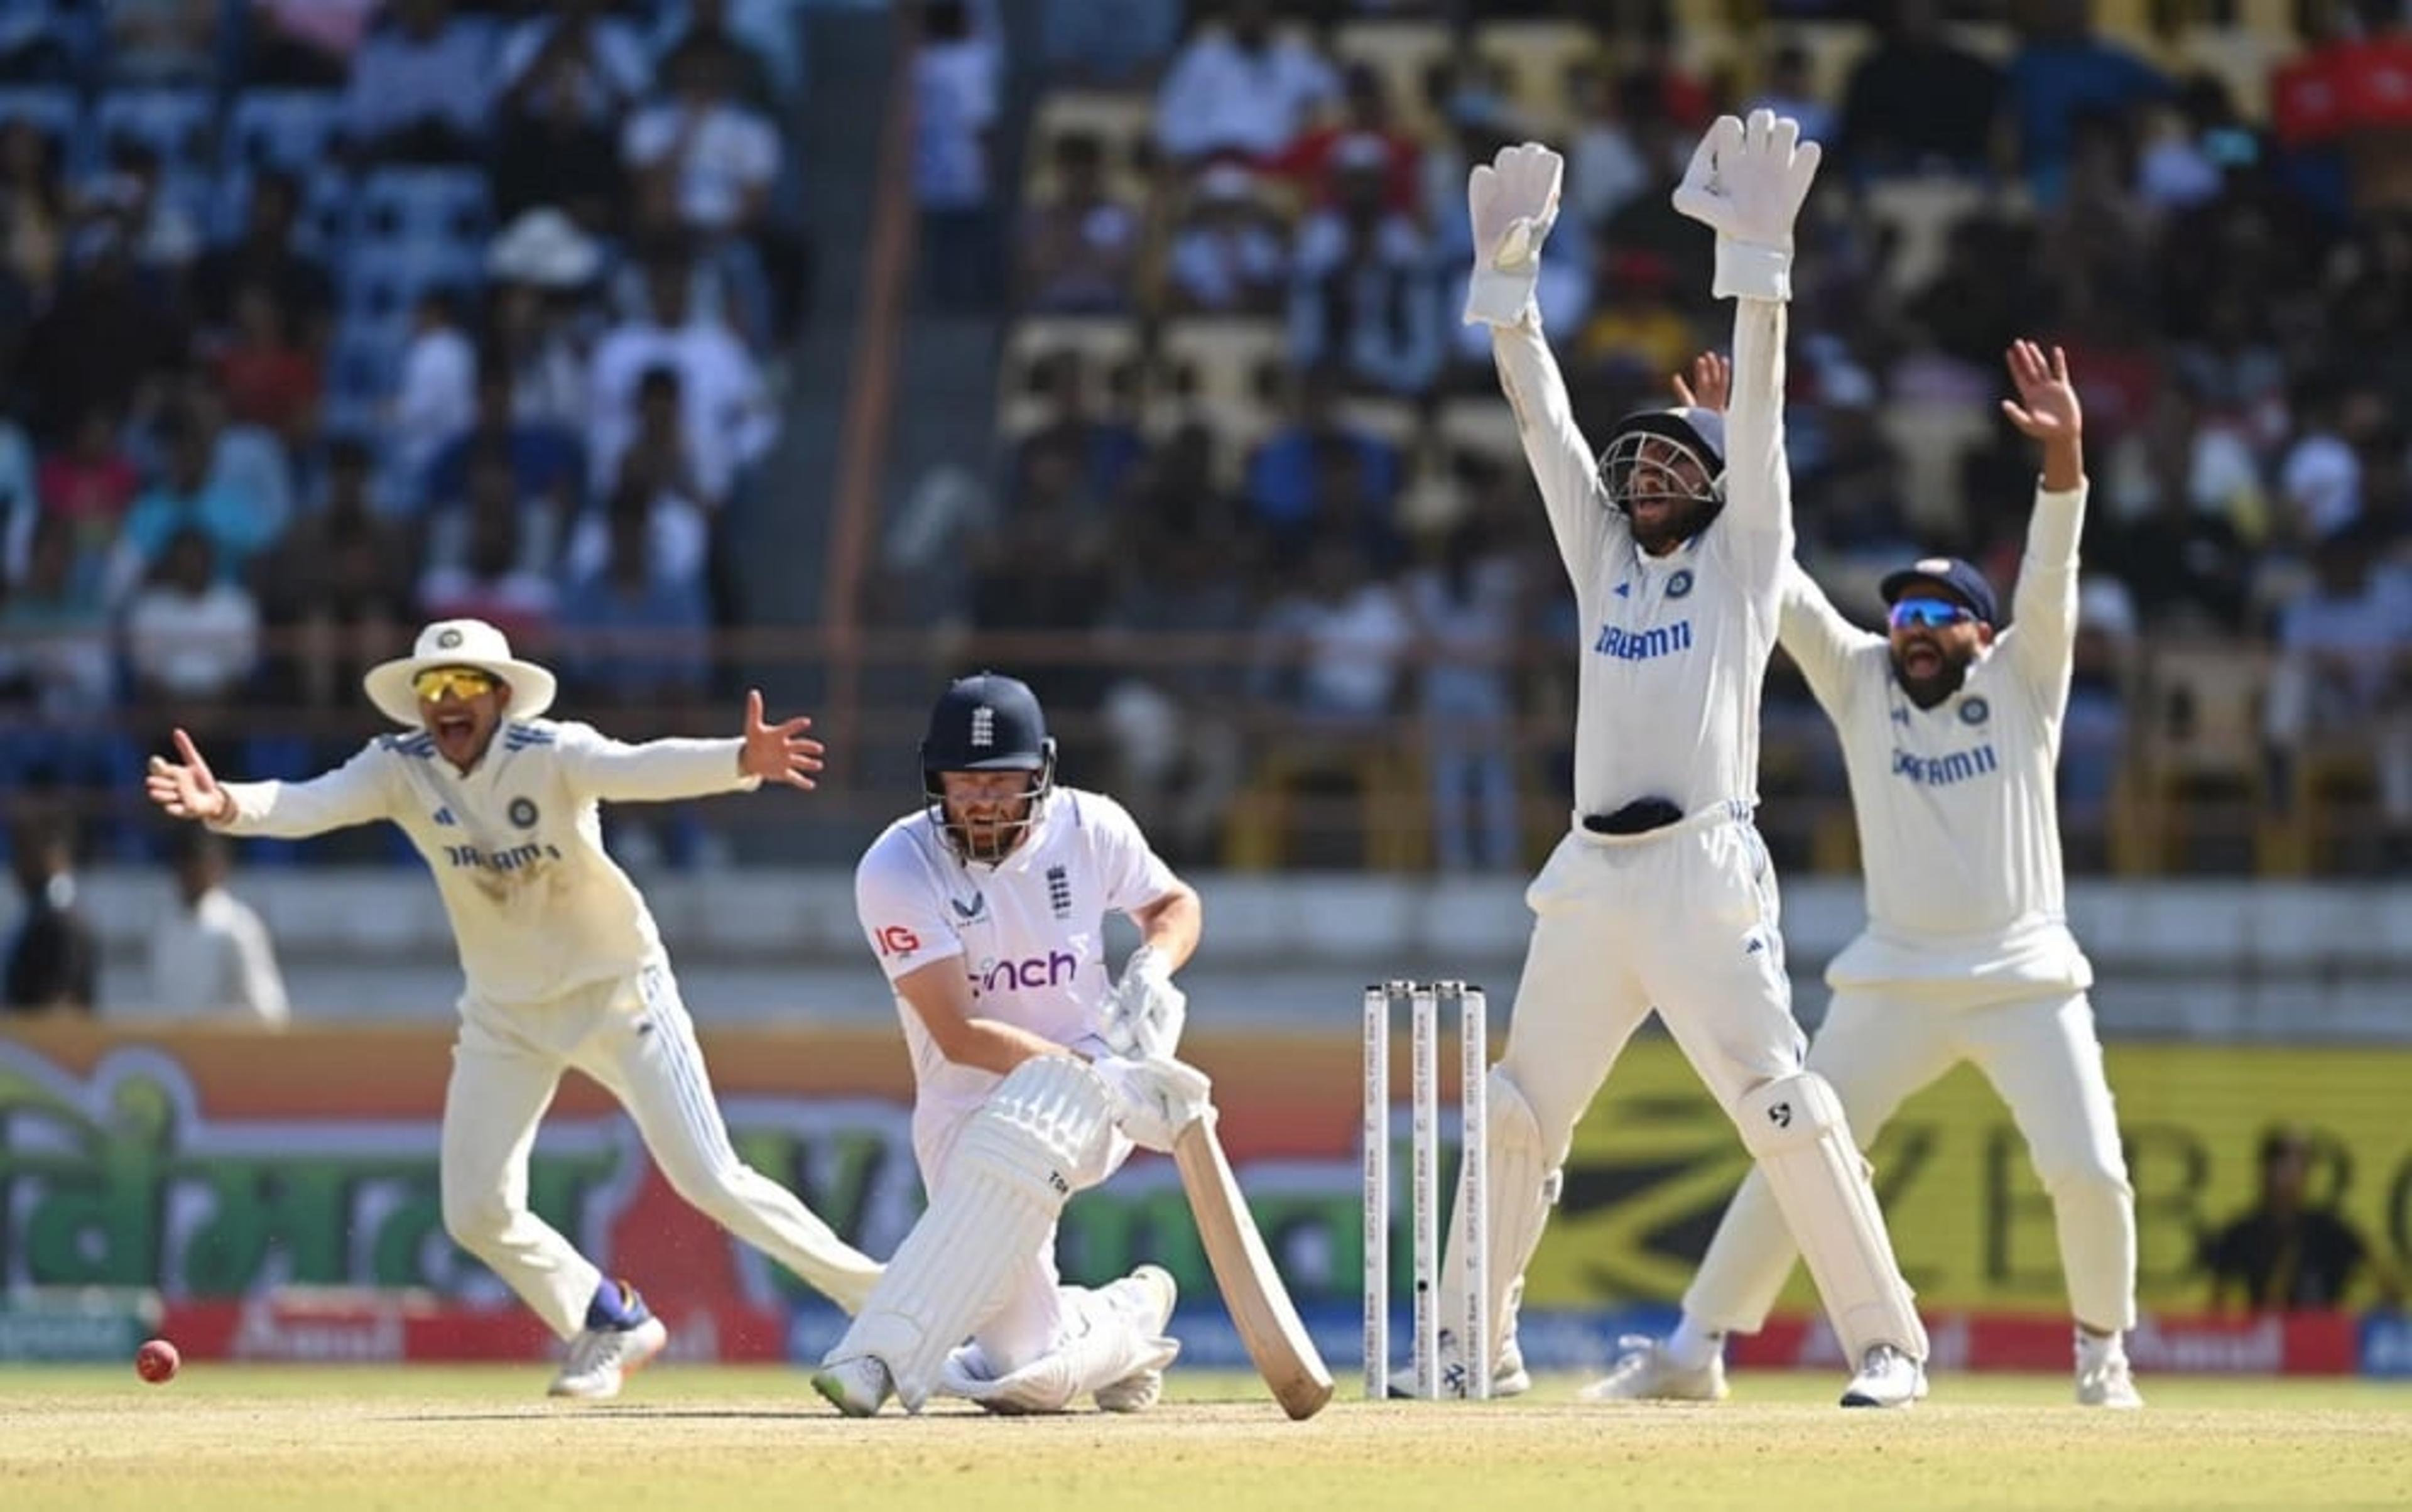 IND vs ENG: भारत ने दर्ज़ की टेस्ट इतिहास की सबसे बड़ी जीत, इंग्लैंड को 434 रनों से हराया, जडेजा ने झटके 5 विकेट